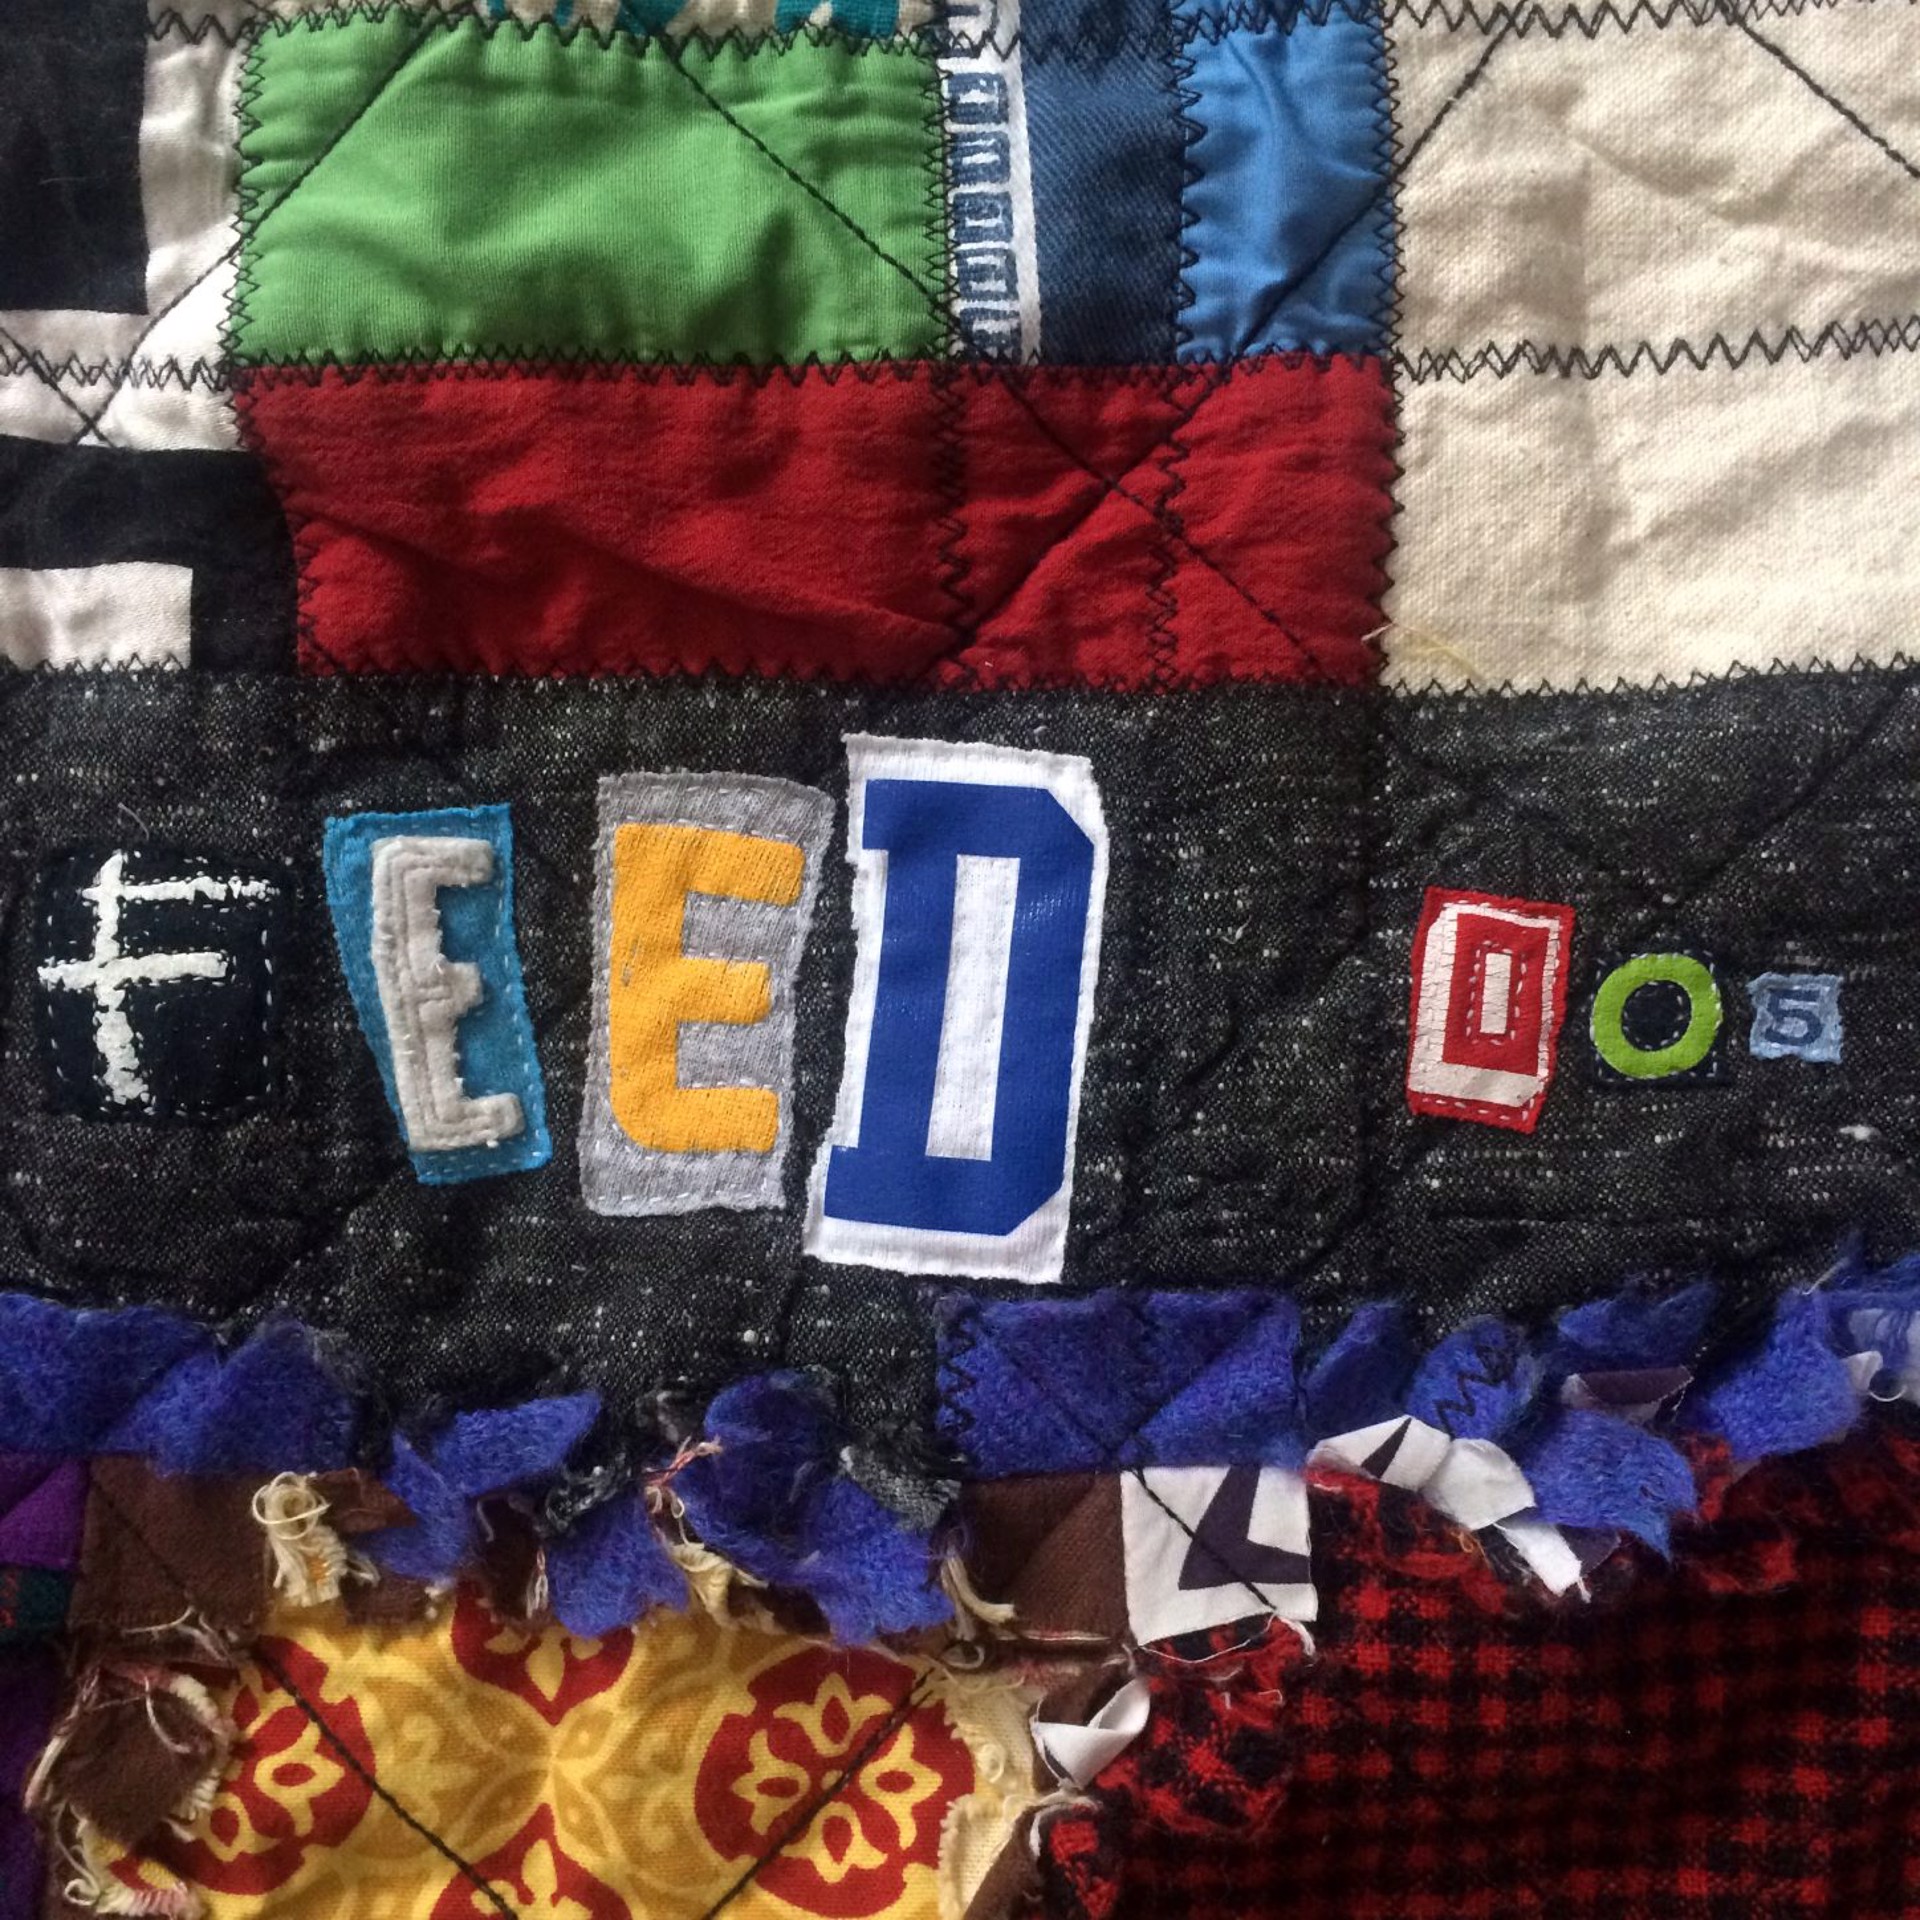 FEED005 by Kelsey Redman